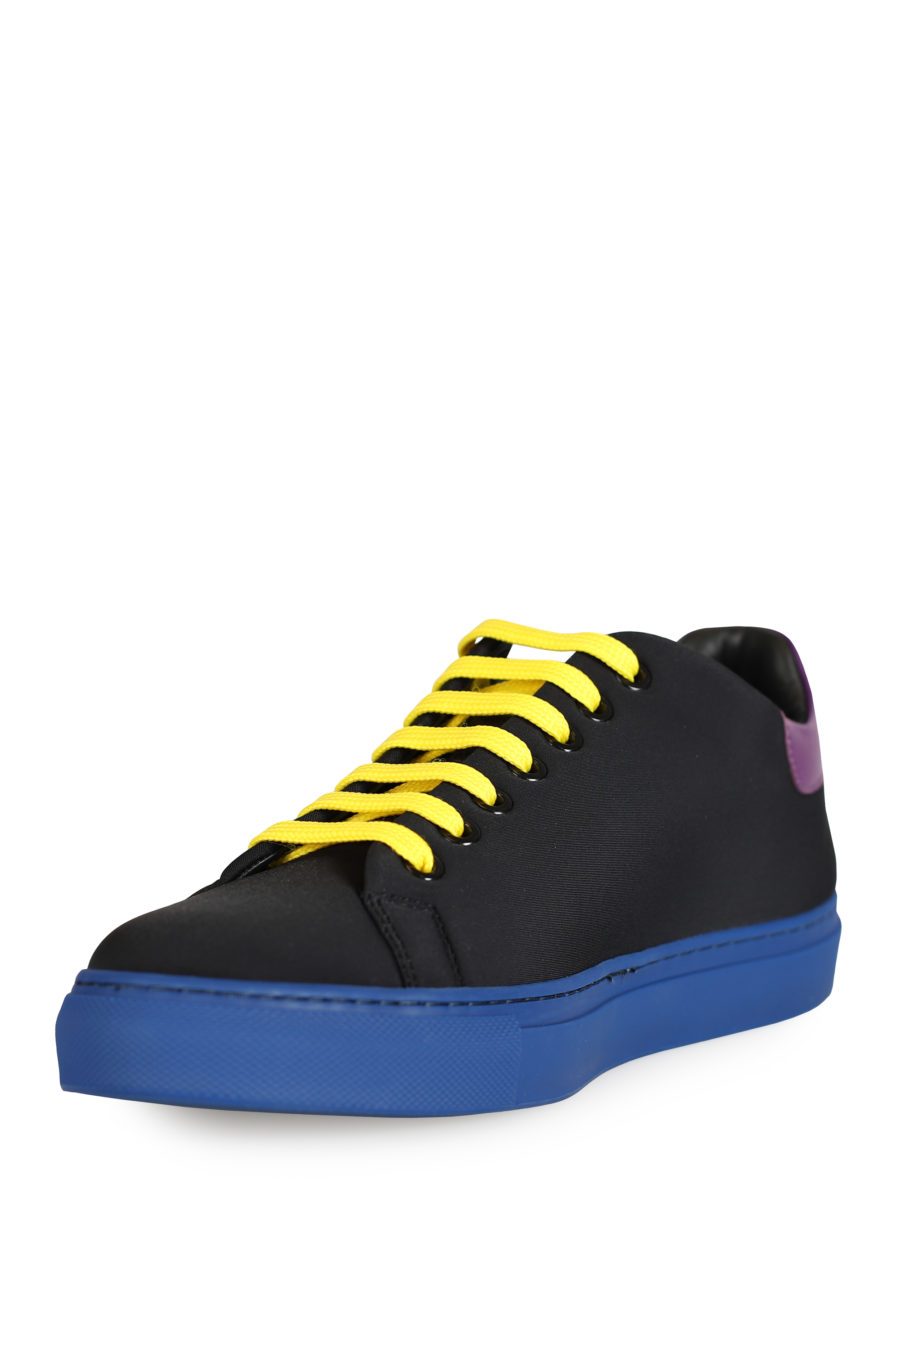 Zapatillas negras con detalles de colores - IMG 3321